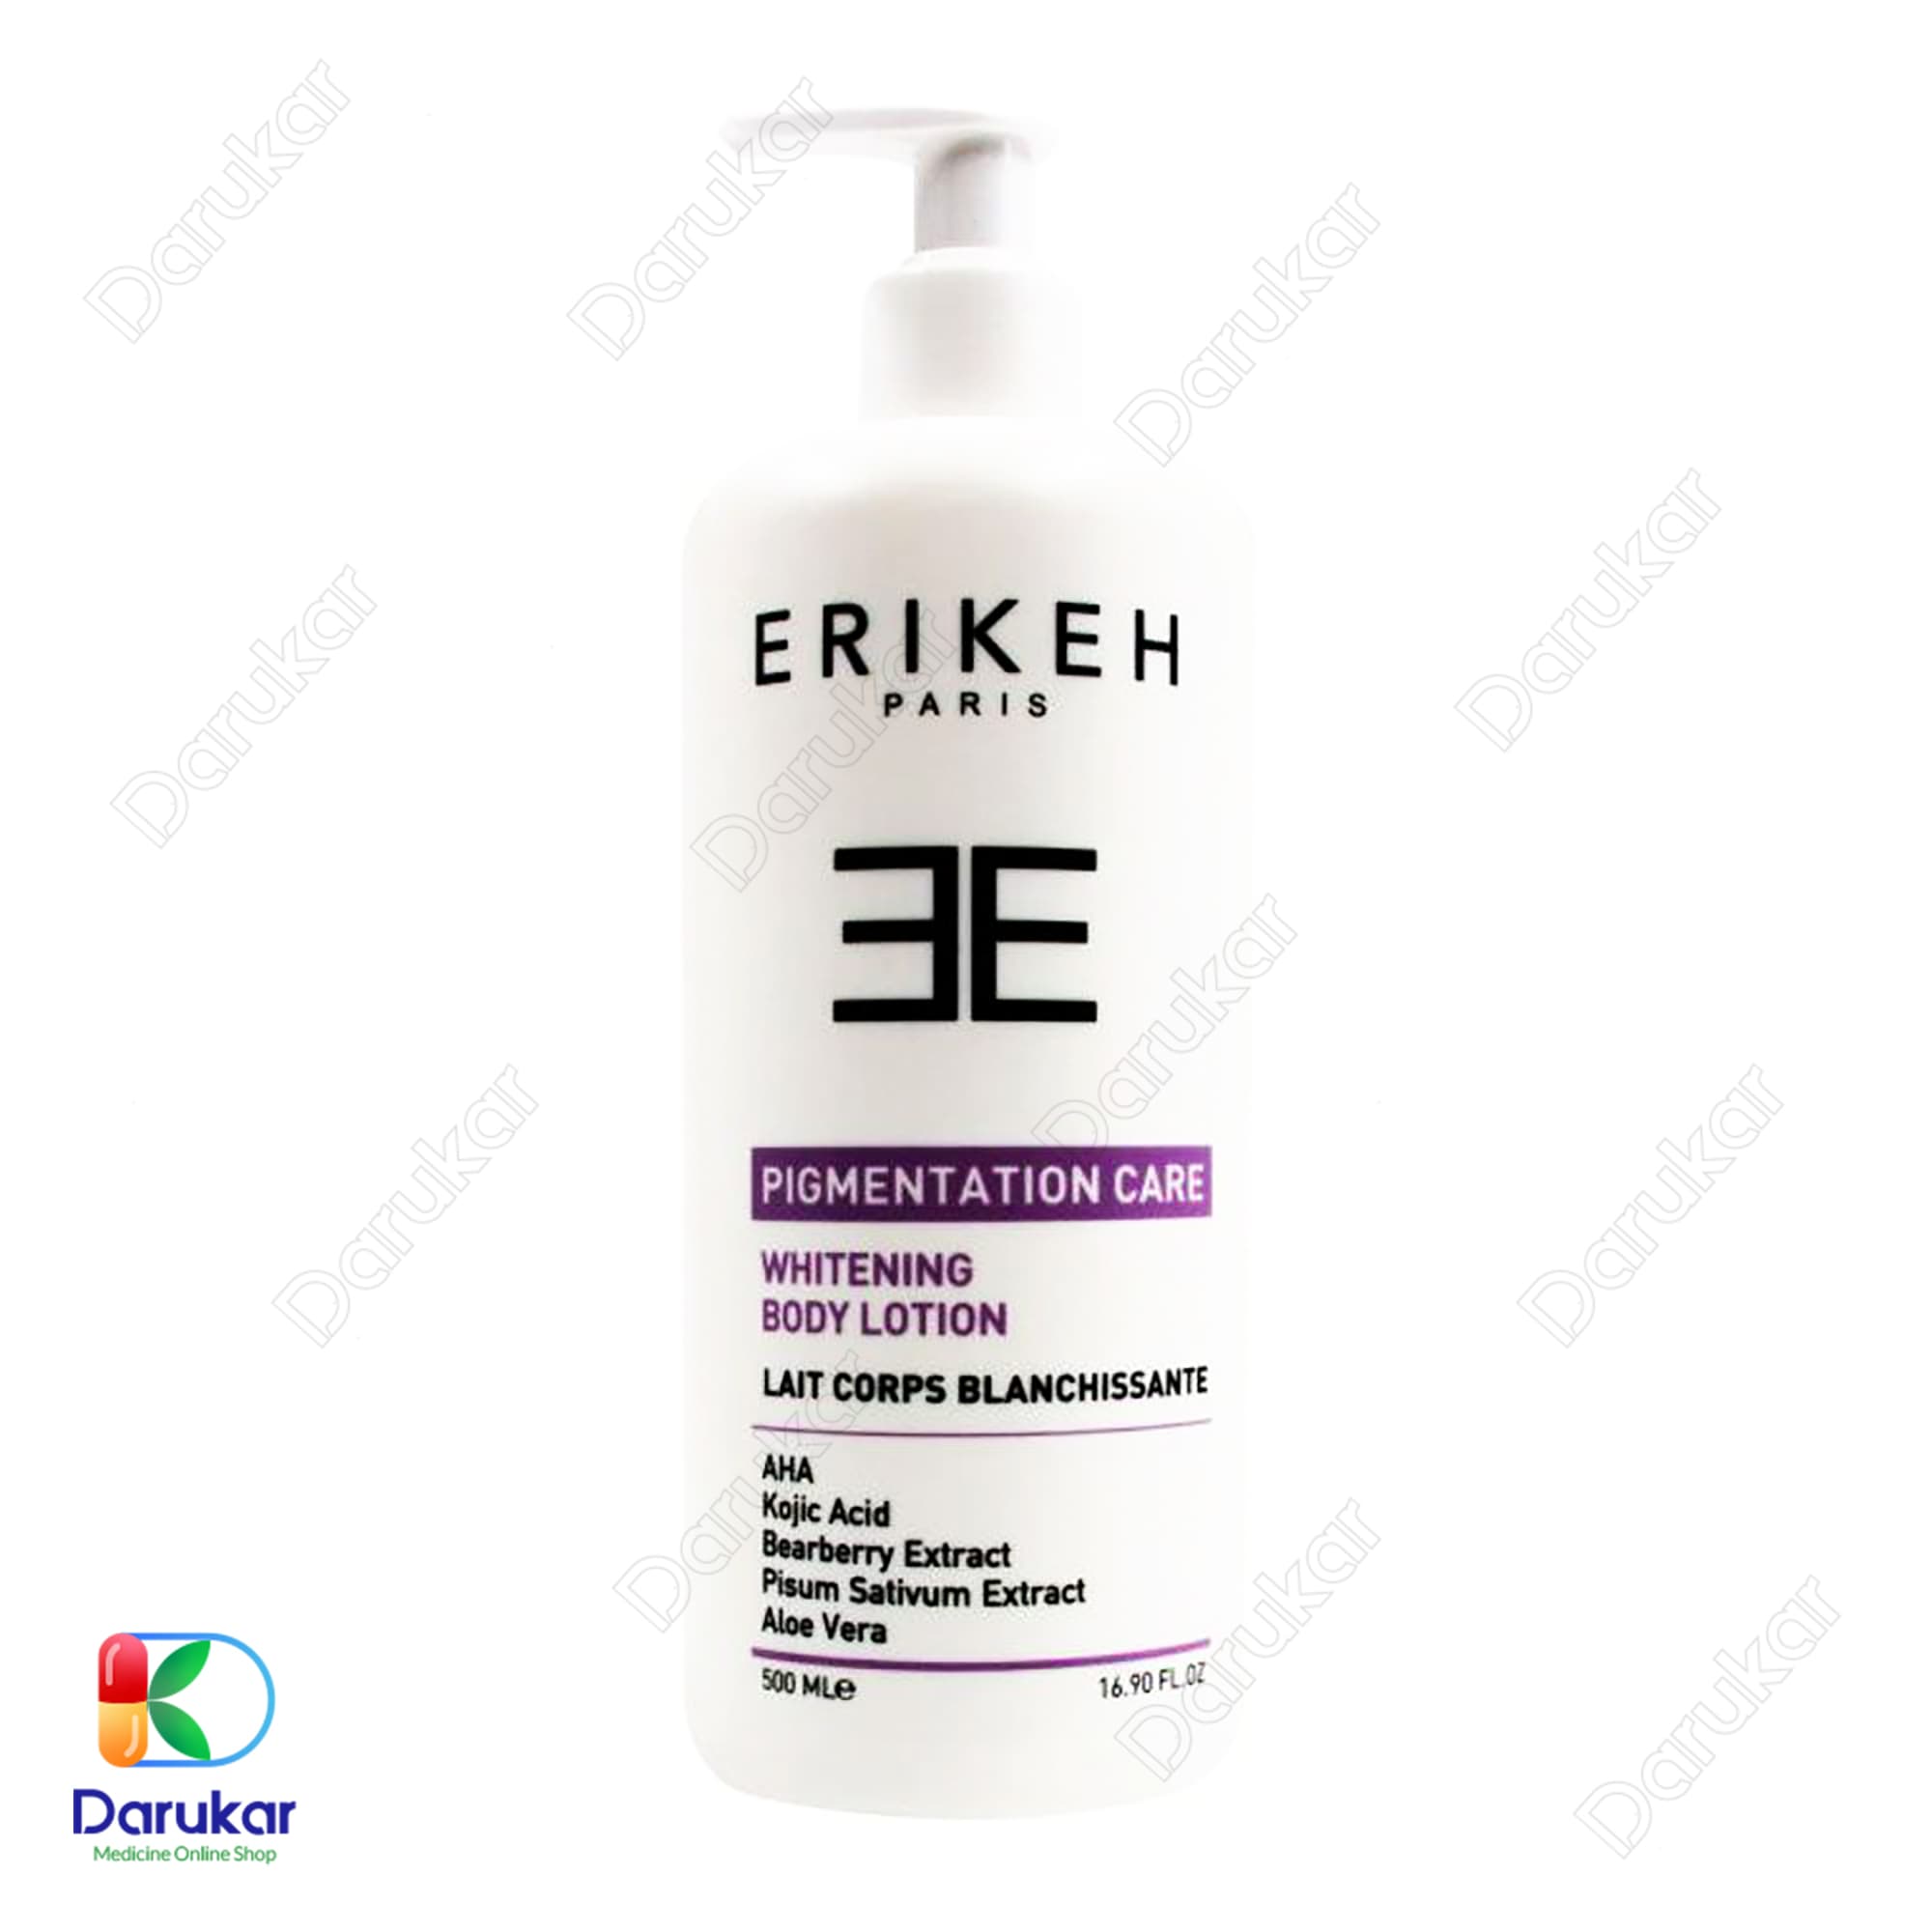 Erikeh Whitening Body Lotion 1